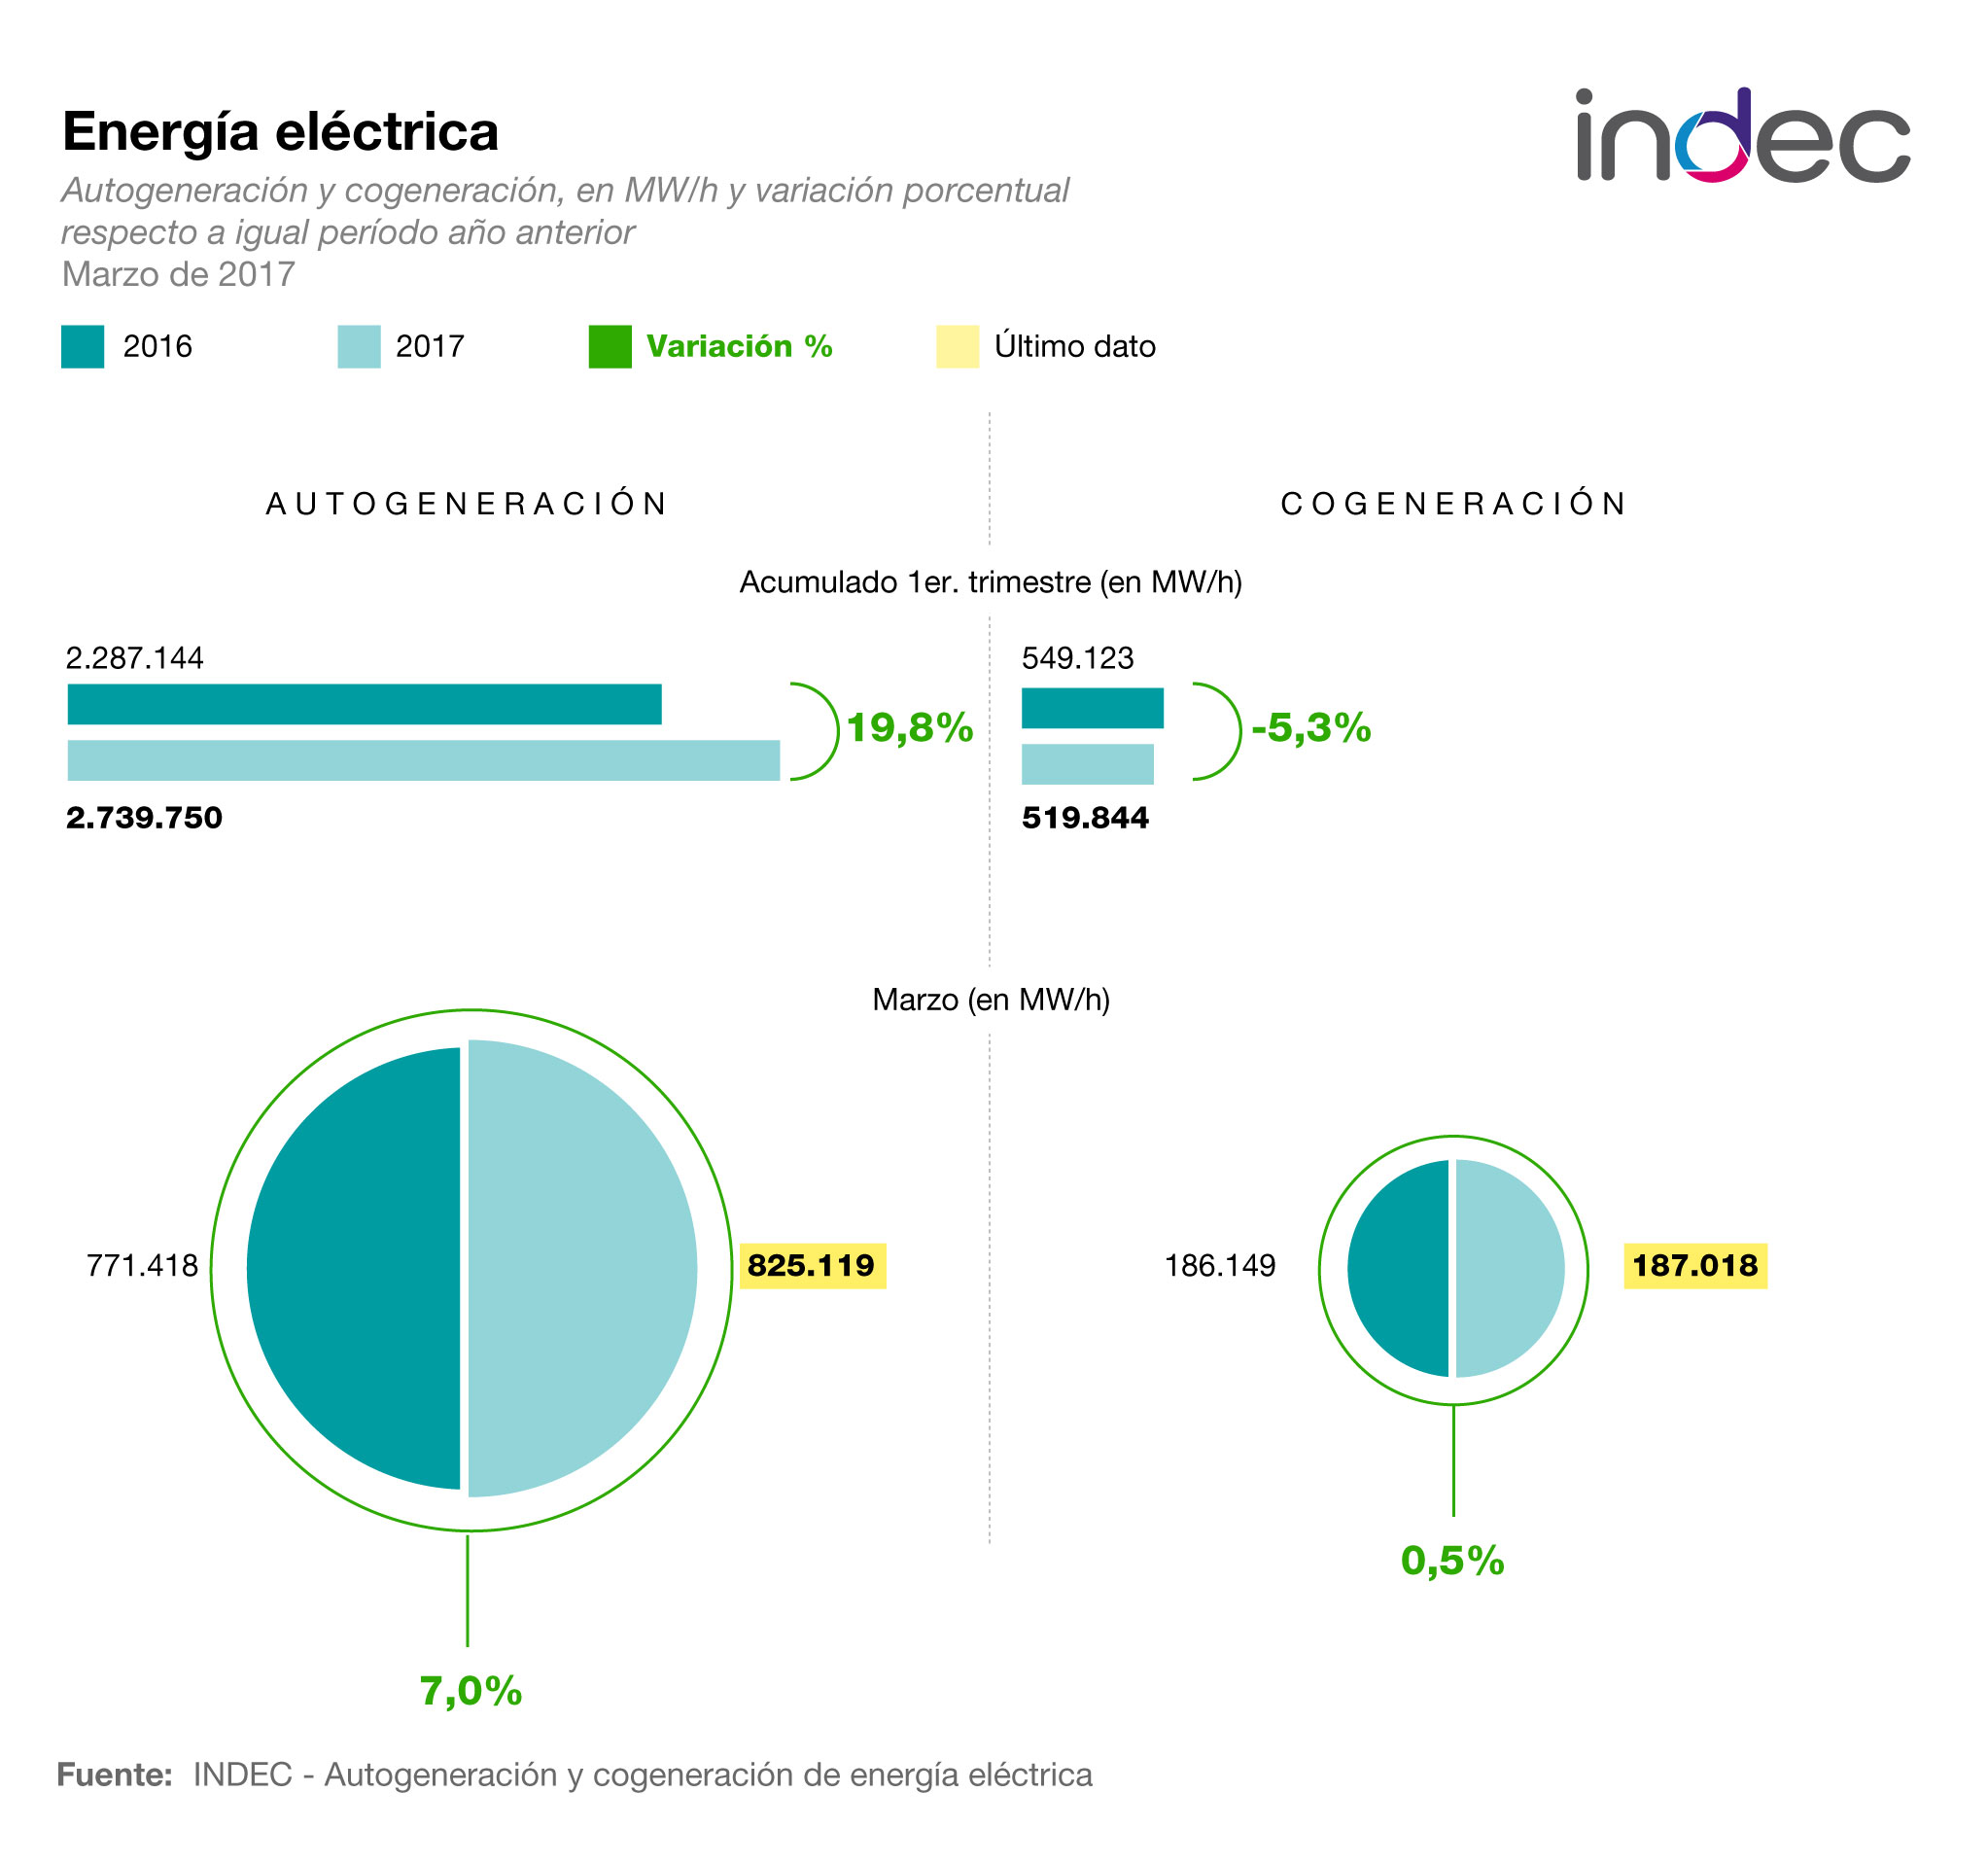 Energía eléctrica. Autogeneración y cogeneración, en MW/h y variación porcentual respecto a igual período del año anterior. Marzo de 2017.